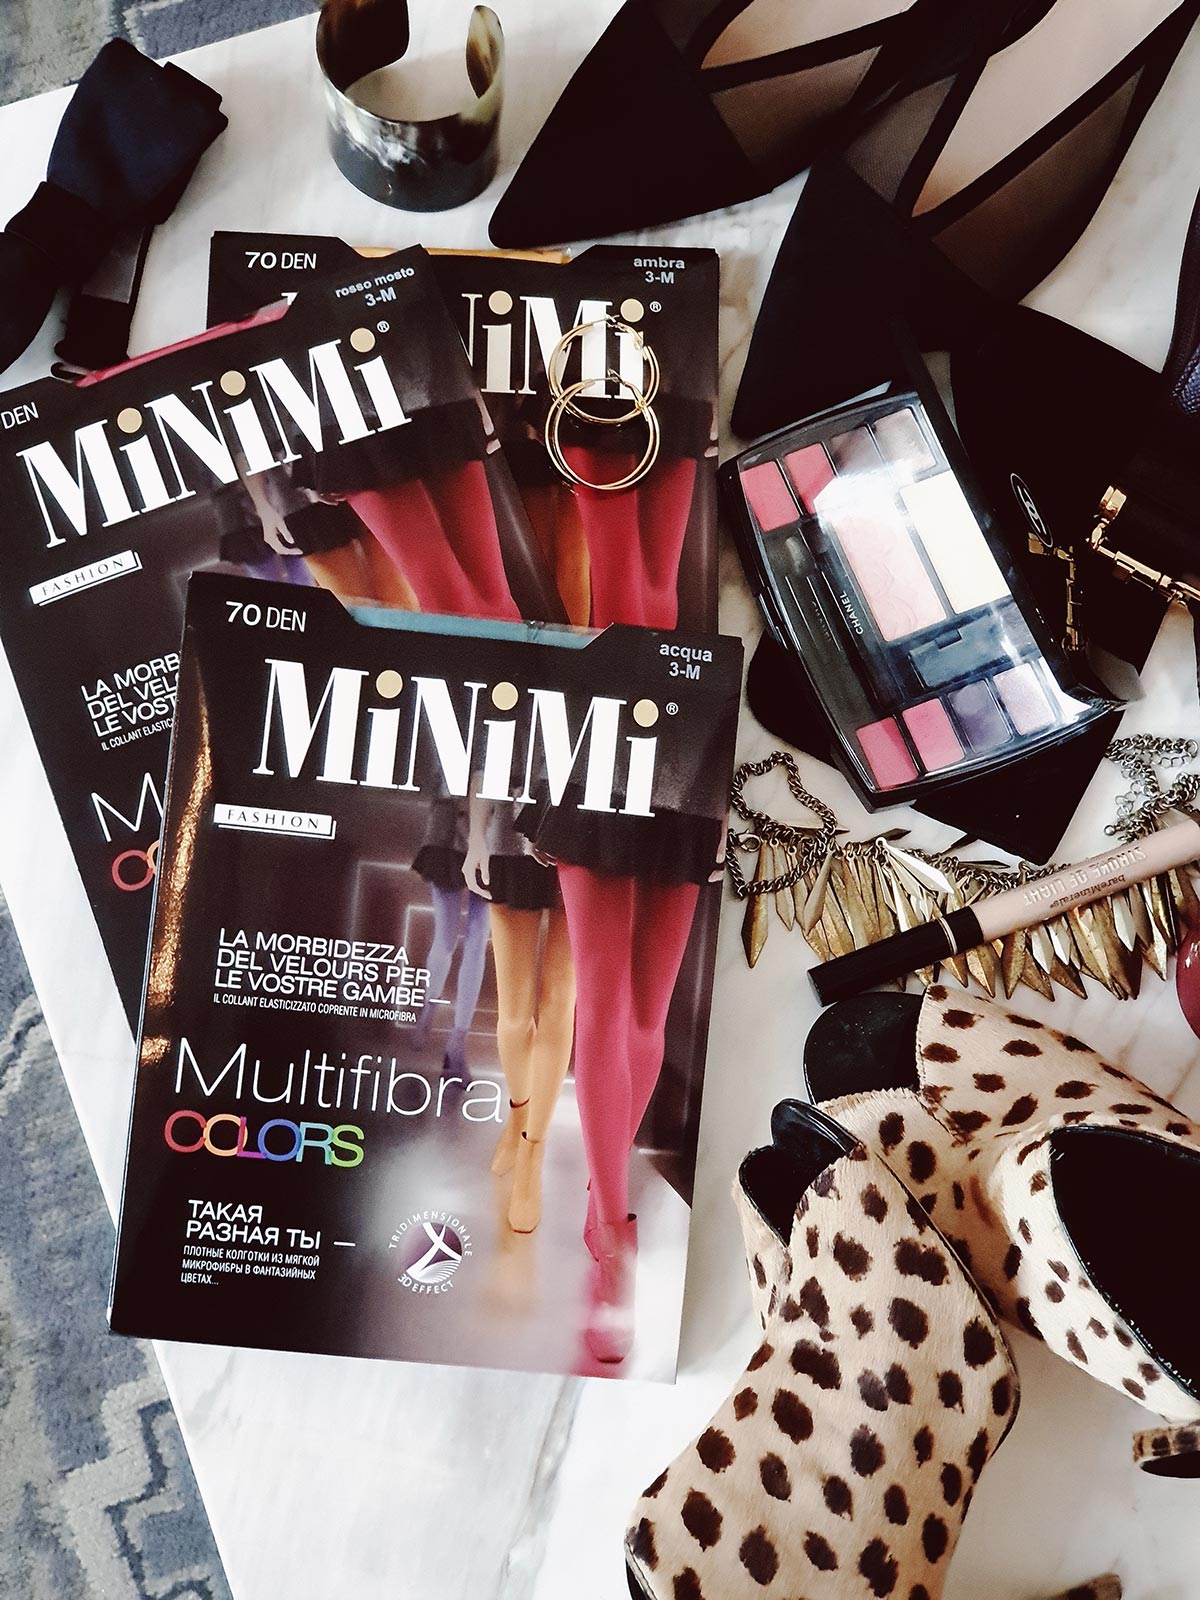 Все краски осени в новой коллекции колготок MiNiMi Multifibra Colors